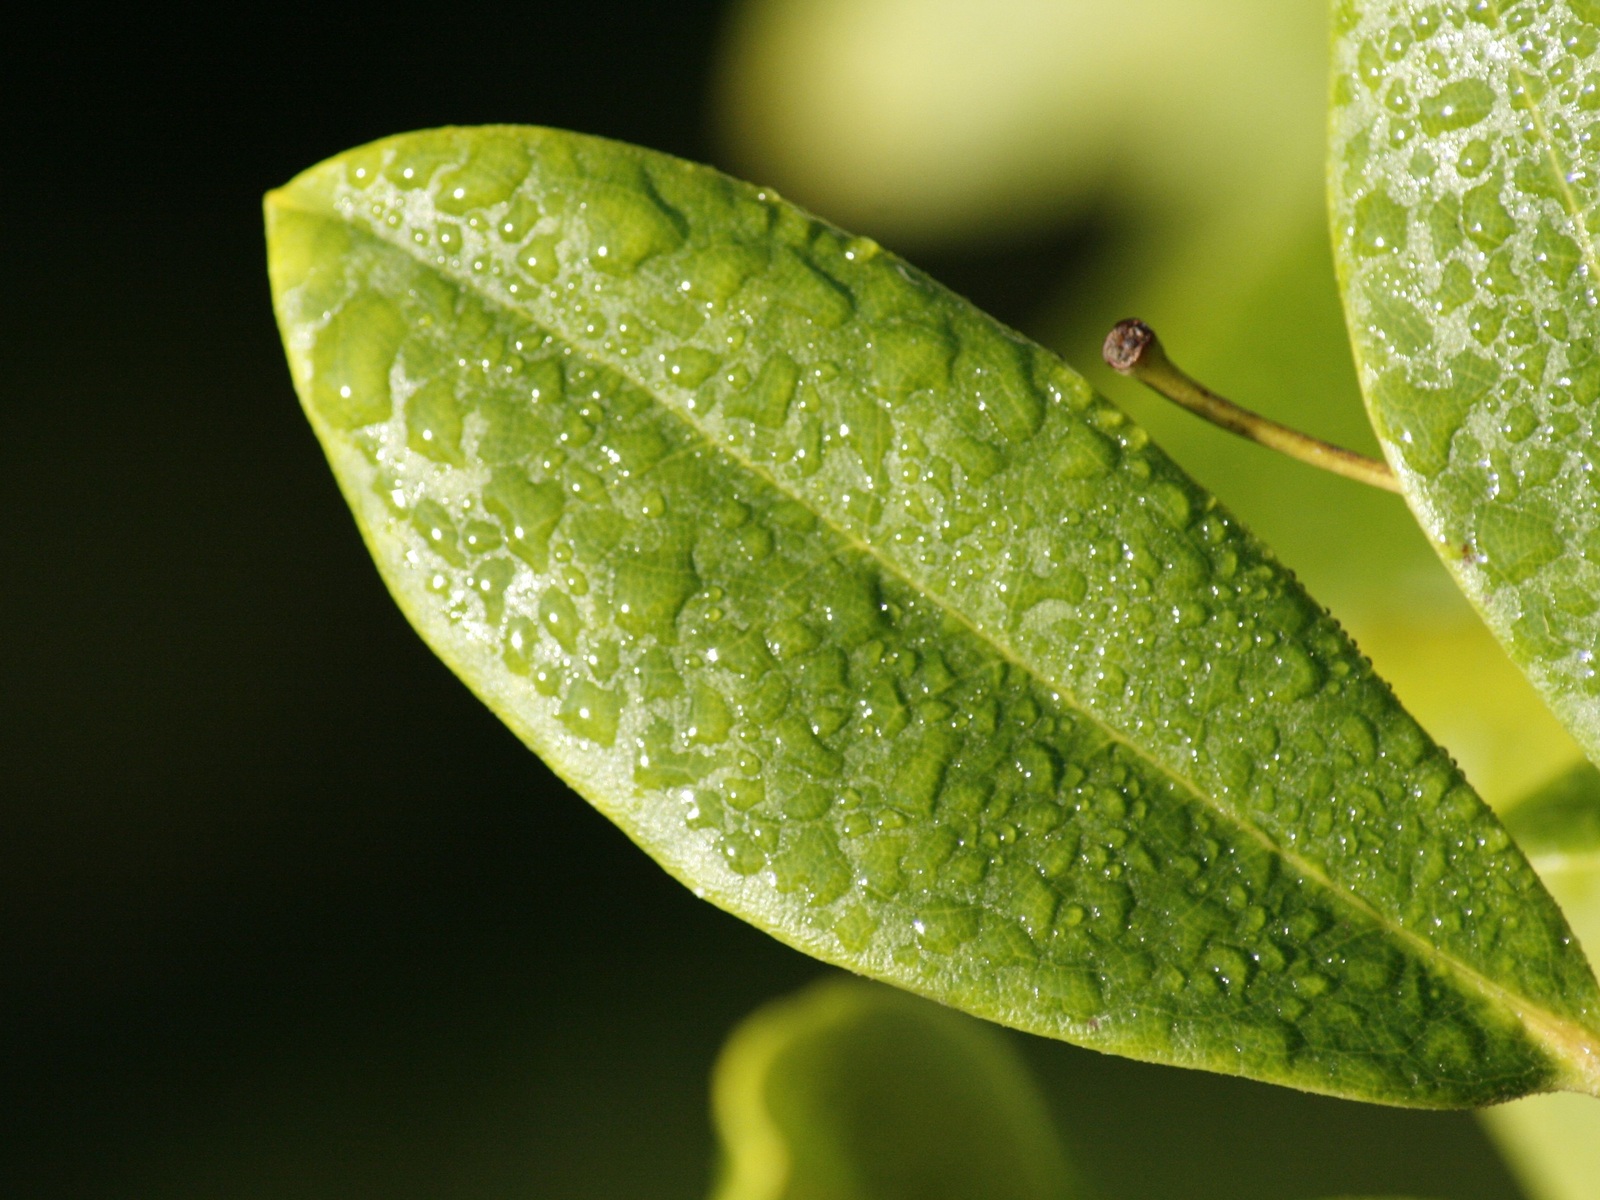 leaf-drop-dew-surface.jpg